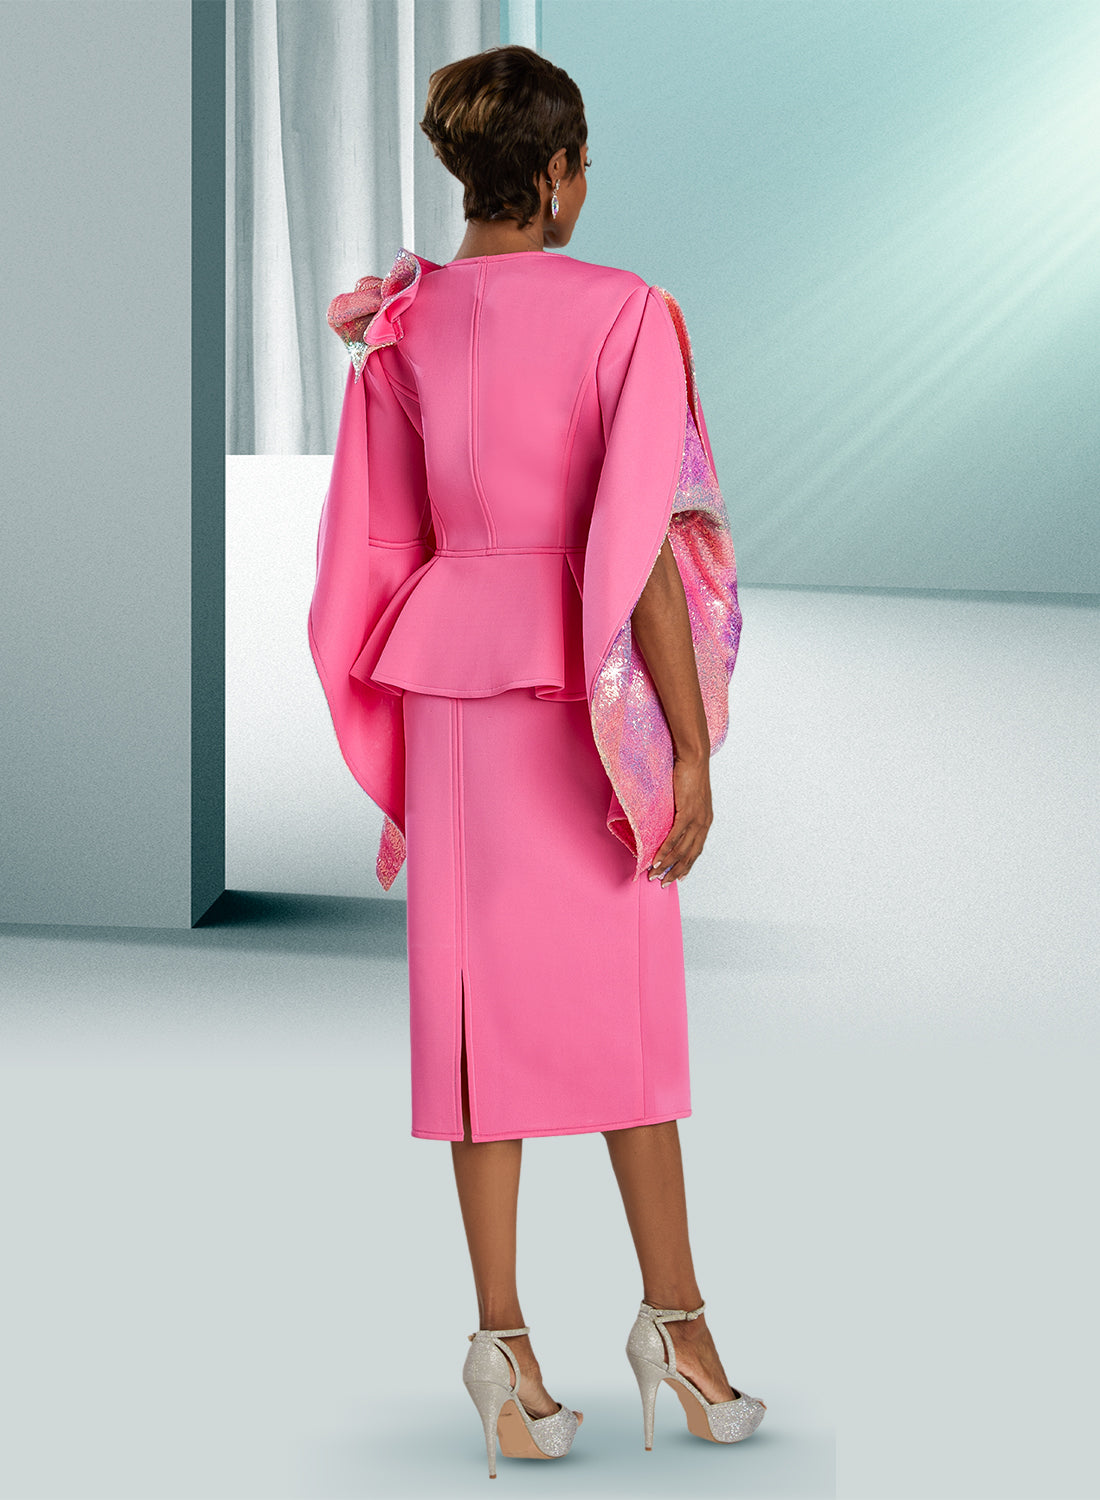 Donna Vinci 12114 - Bubble Gum - Scuba Skirt Suit